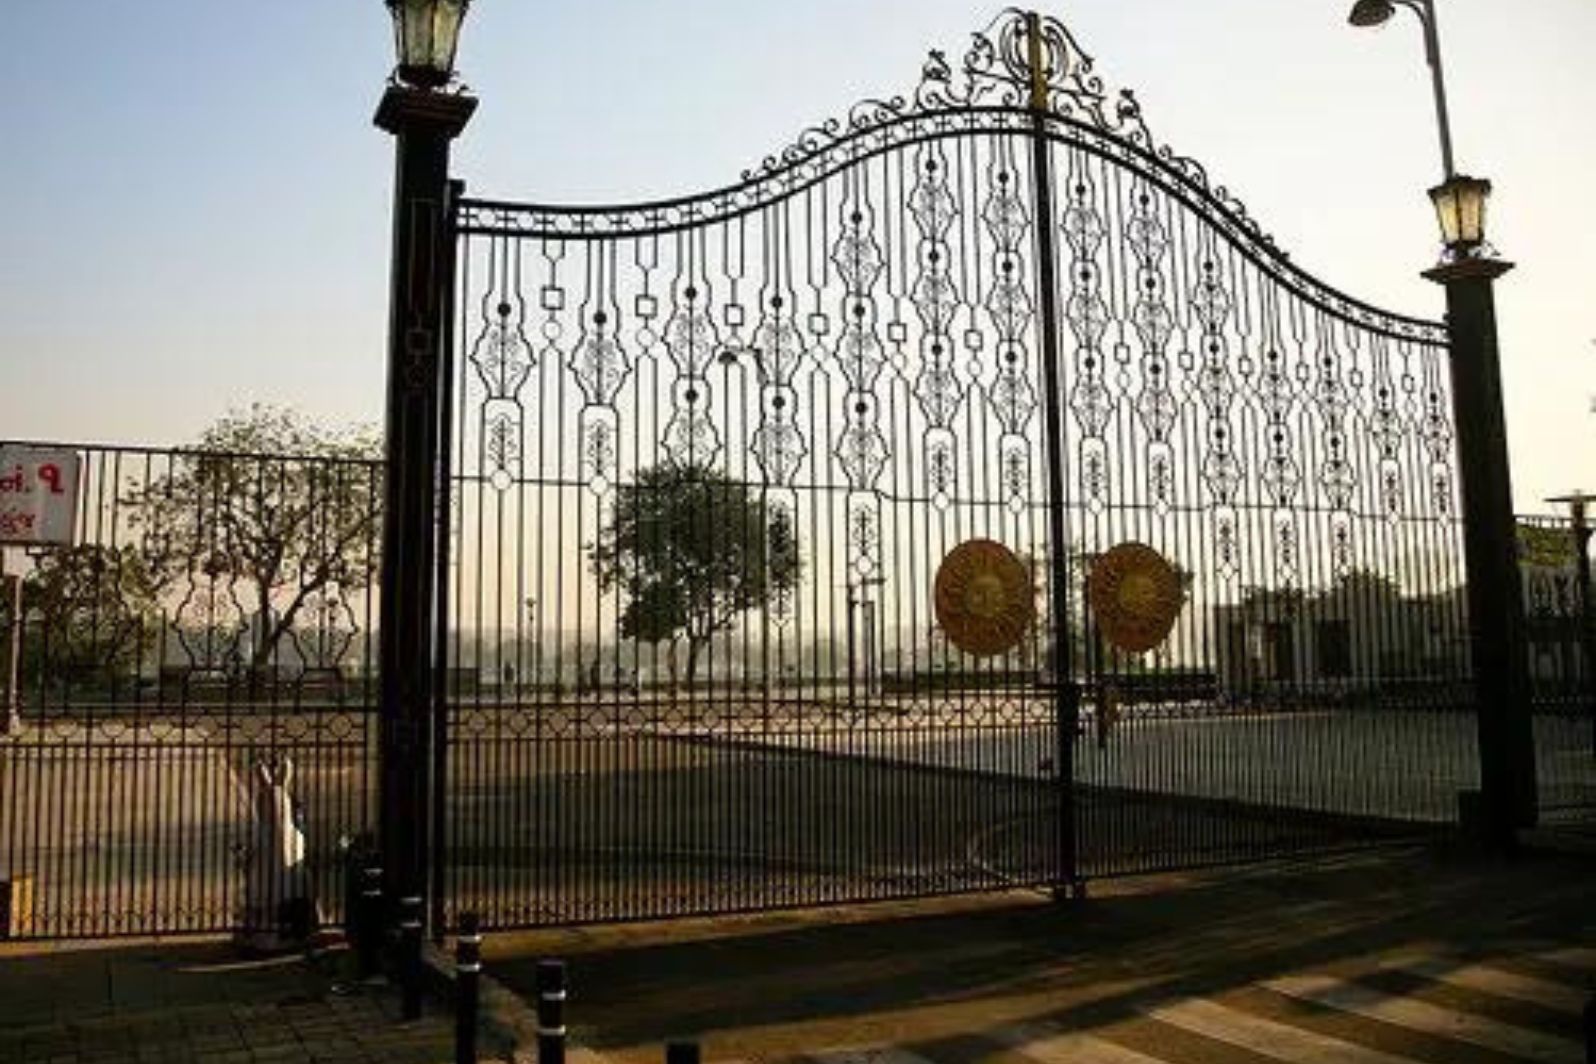 kankaria gate no 3 ahmedabad